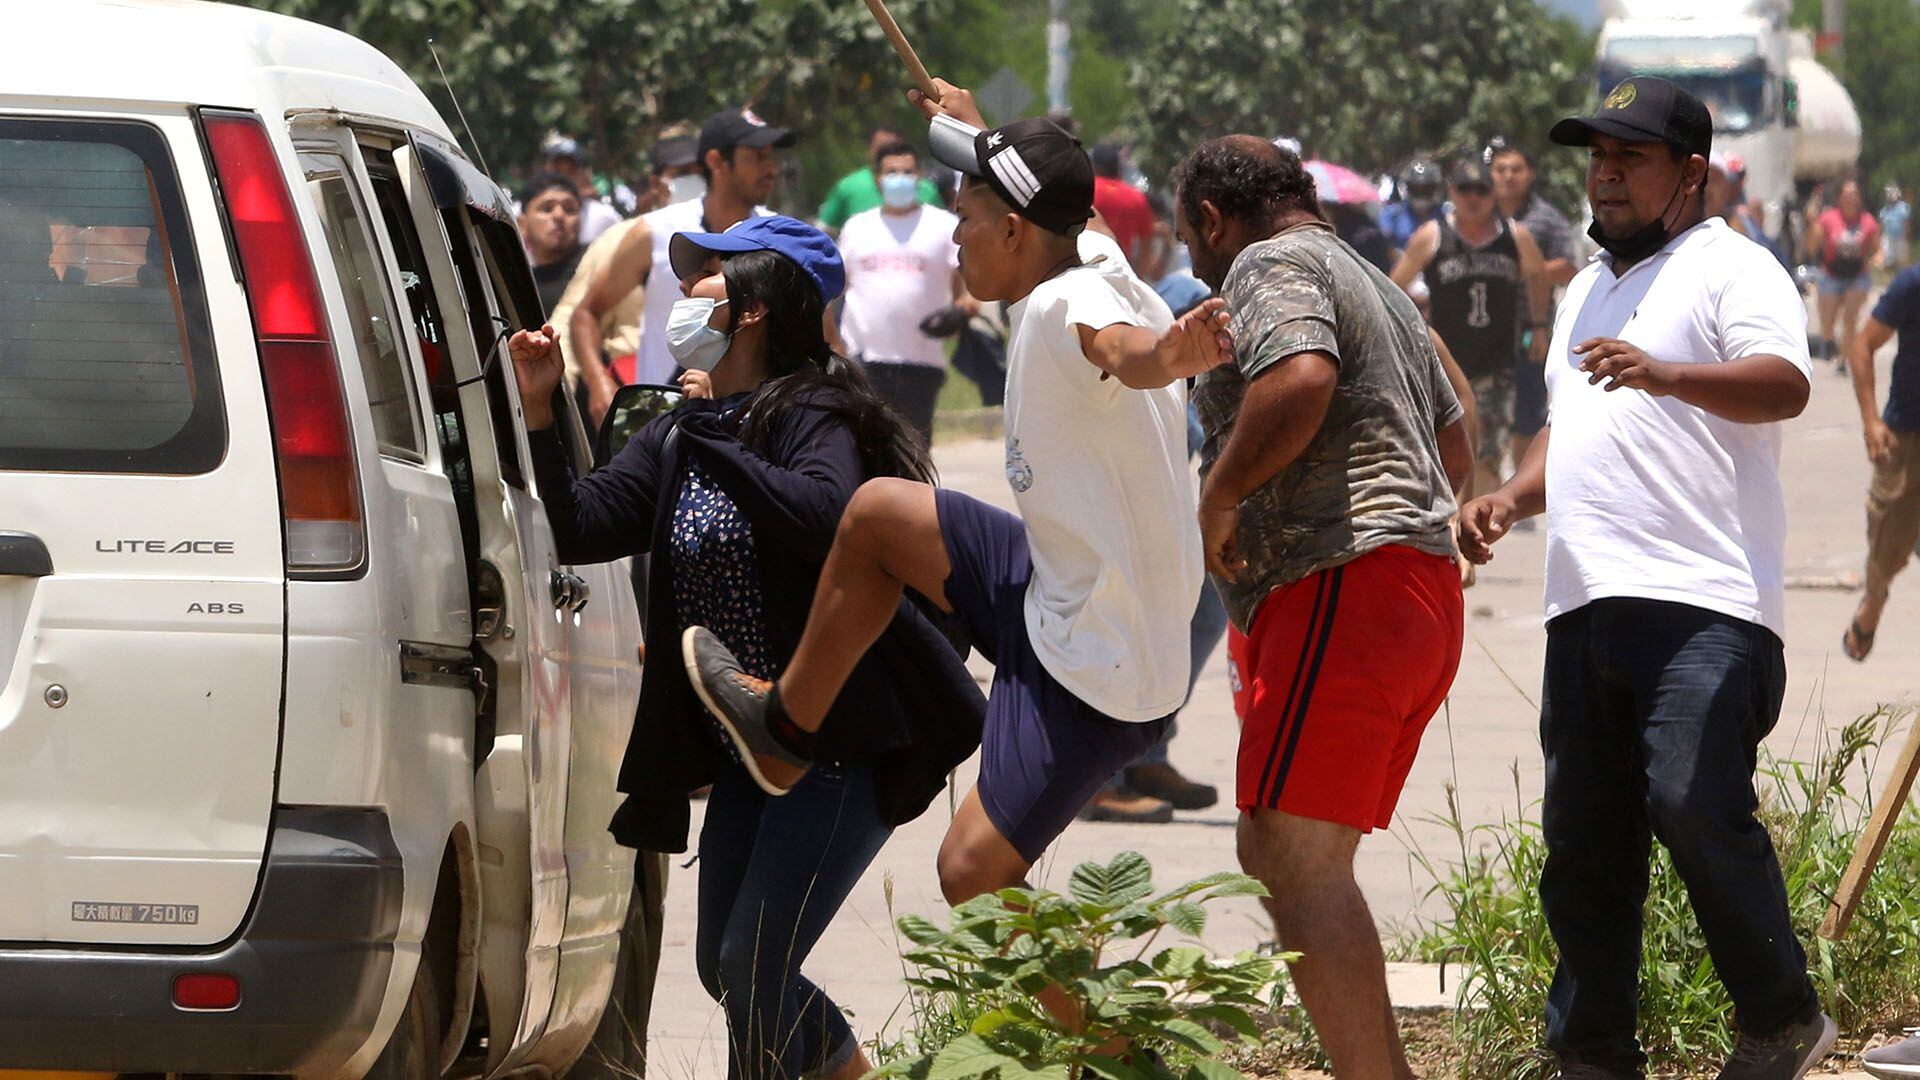 Opositores criticaron que solamente hubiera detenciones de personas que protestan contra la ley y no así de los grupos oficialistas que intentan romper la huelga con violencia, como se muestra en la foto (EFE)

